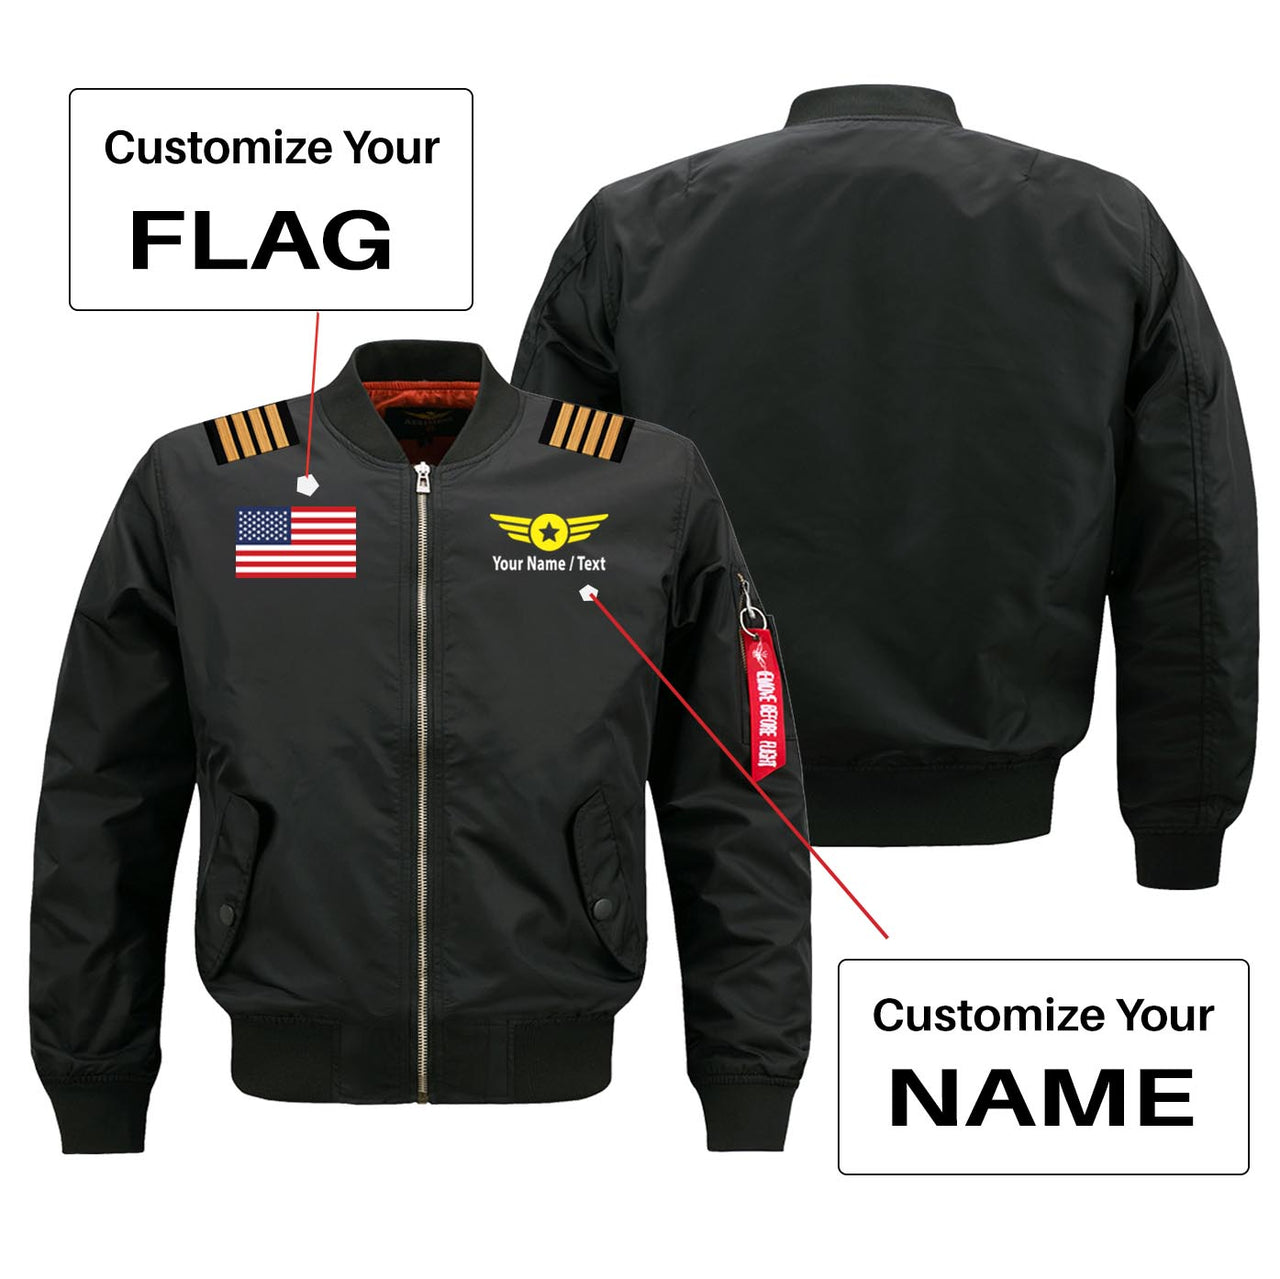 Custom Flag & Name with EPAULETTES (Badge 4) Designed Pilot Jackets